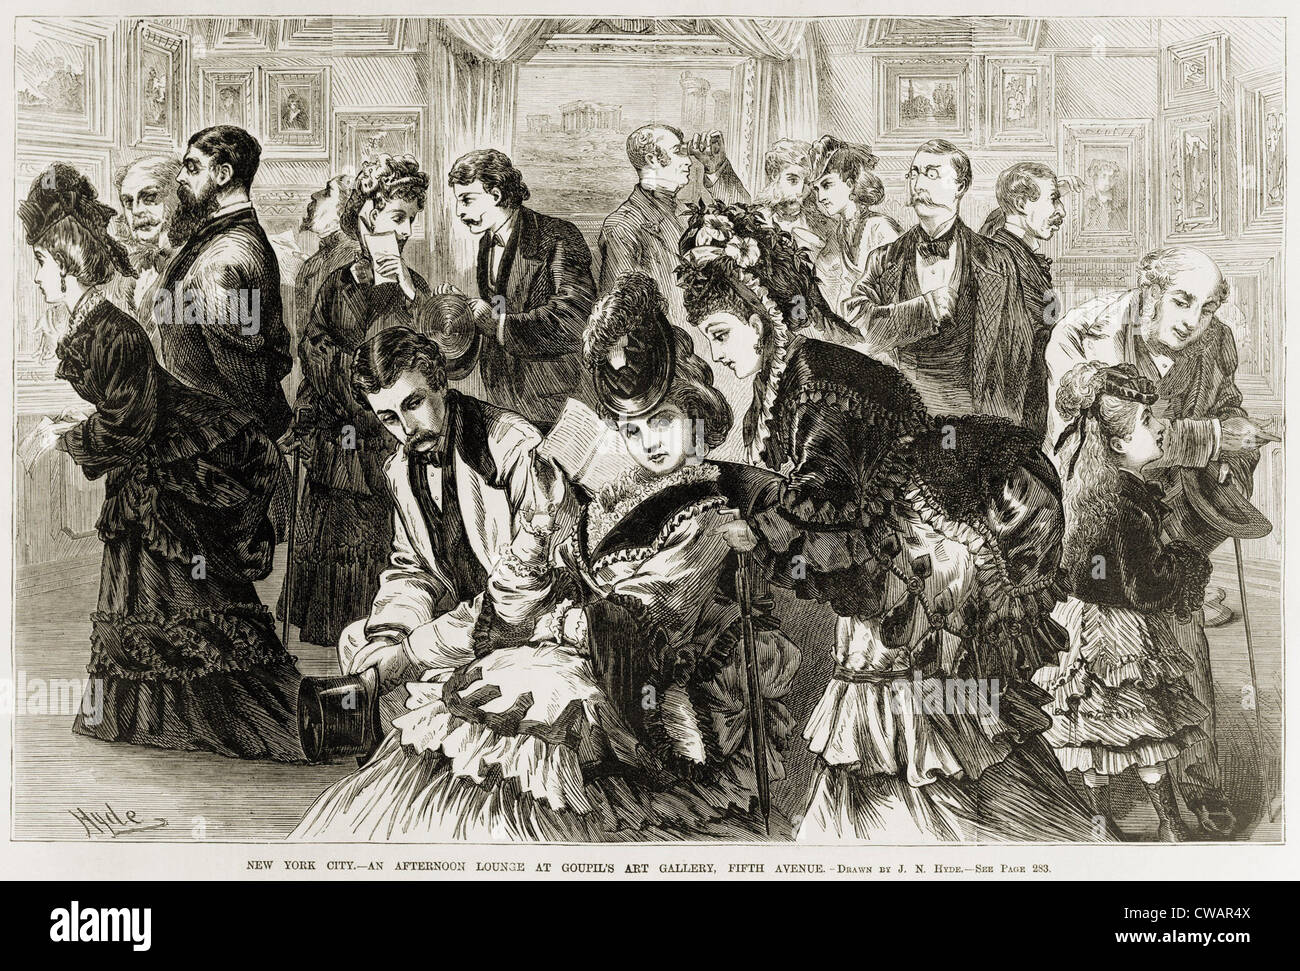 Goupil Kunstgalerie, Fifth Avenue, New York City voller Menschen im Jahr 1872.  Holzstich von Frank Leslie ist illustriert Stockfoto